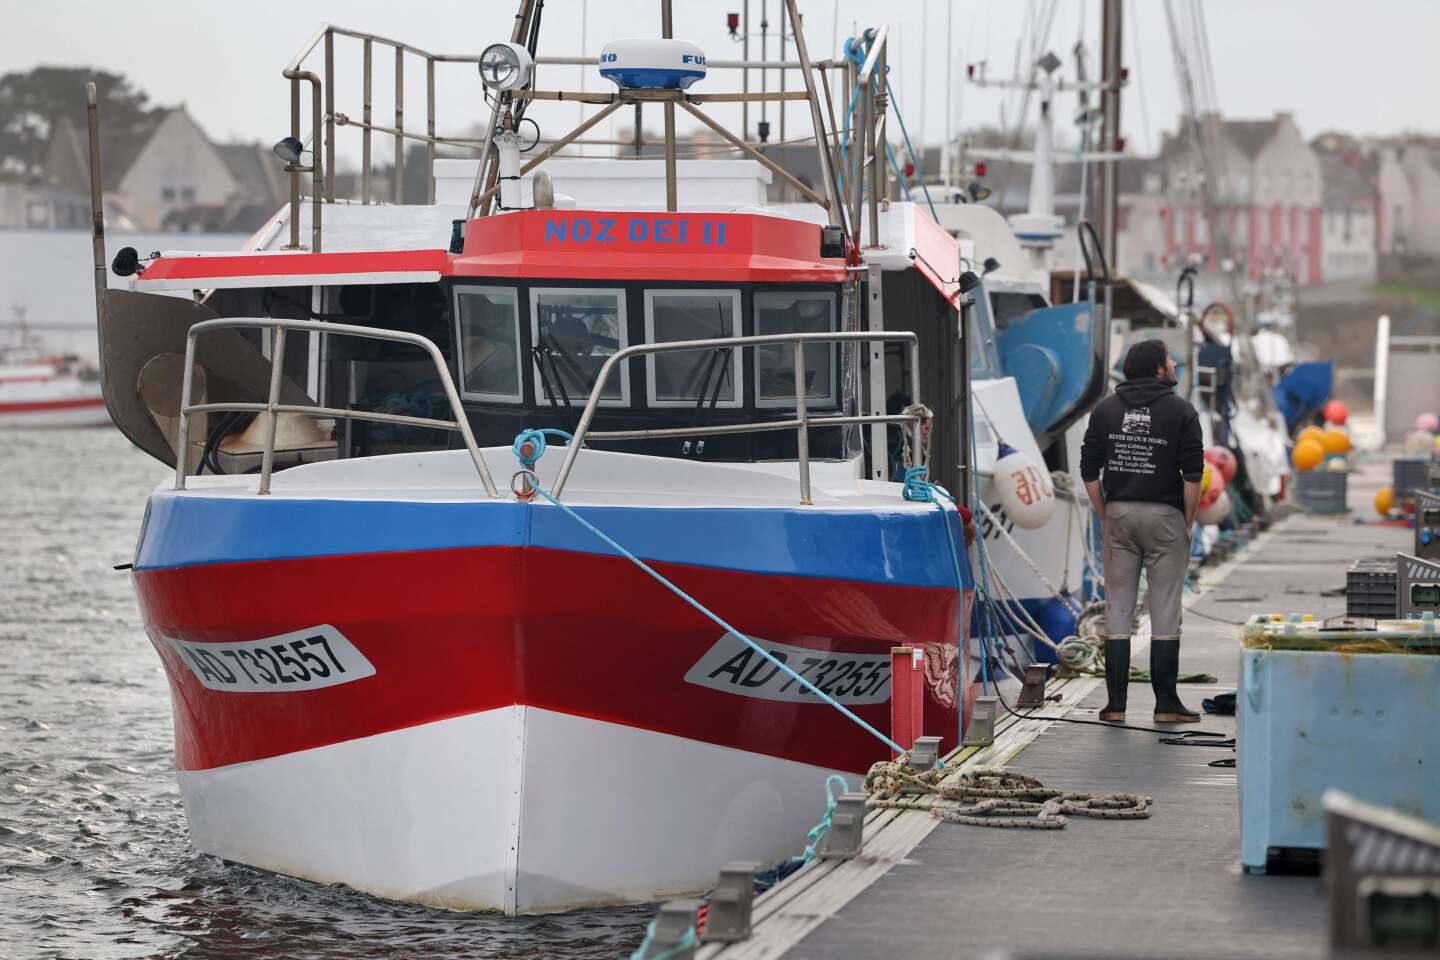 La pêche reprend dans le golfe de Gascogne, après un mois d’interdiction pour préserver les dauphins